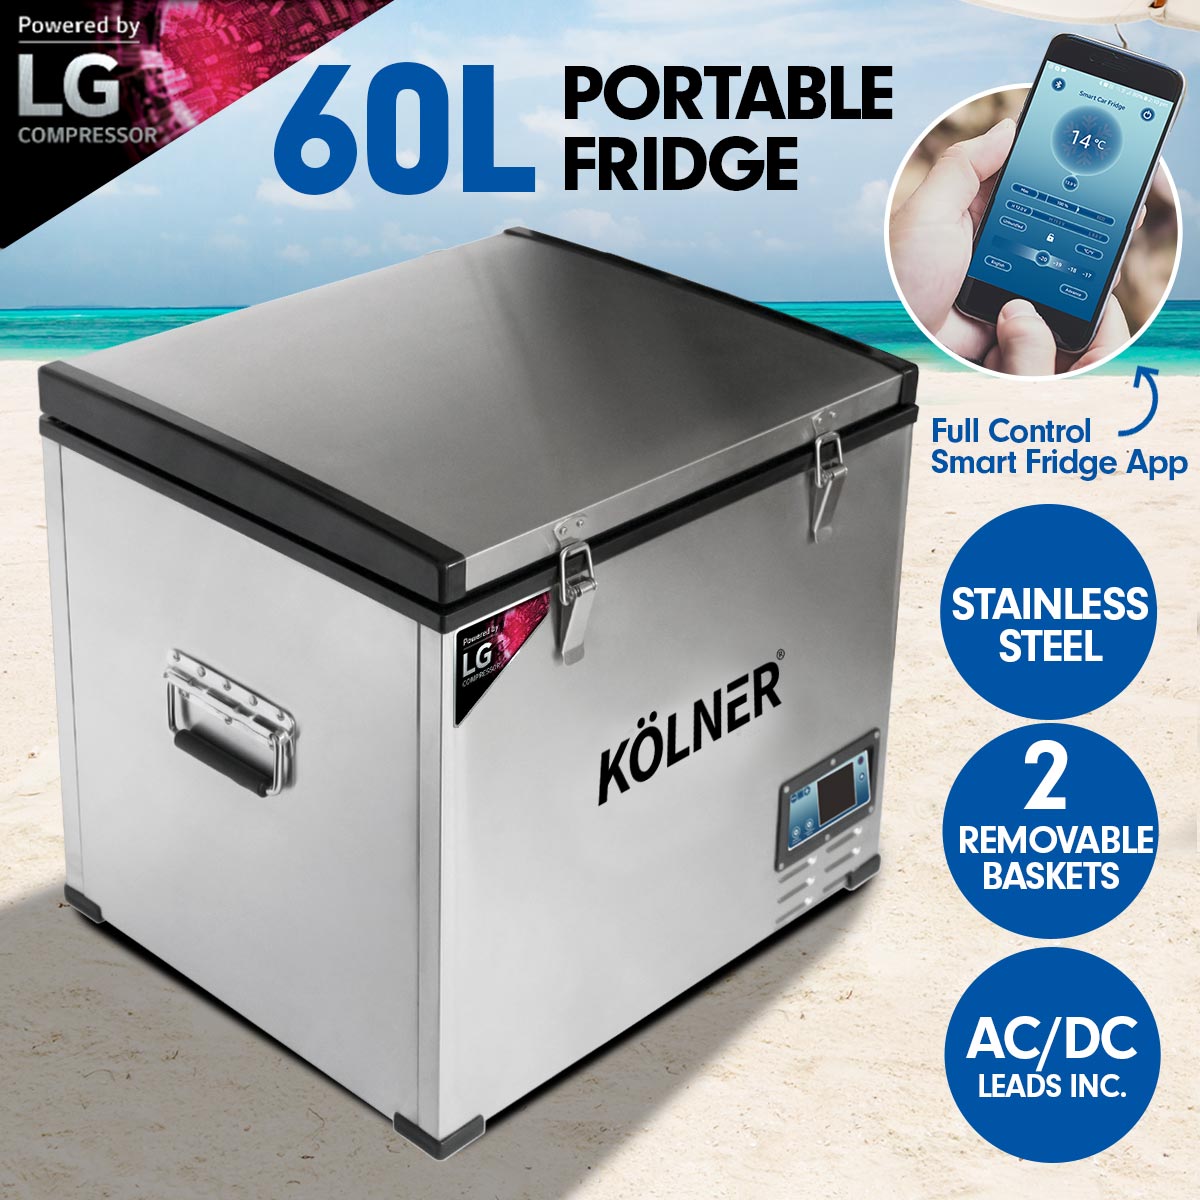 Kolner 60L Portable Fridge Cooler Freezer Camping with LG Compressor